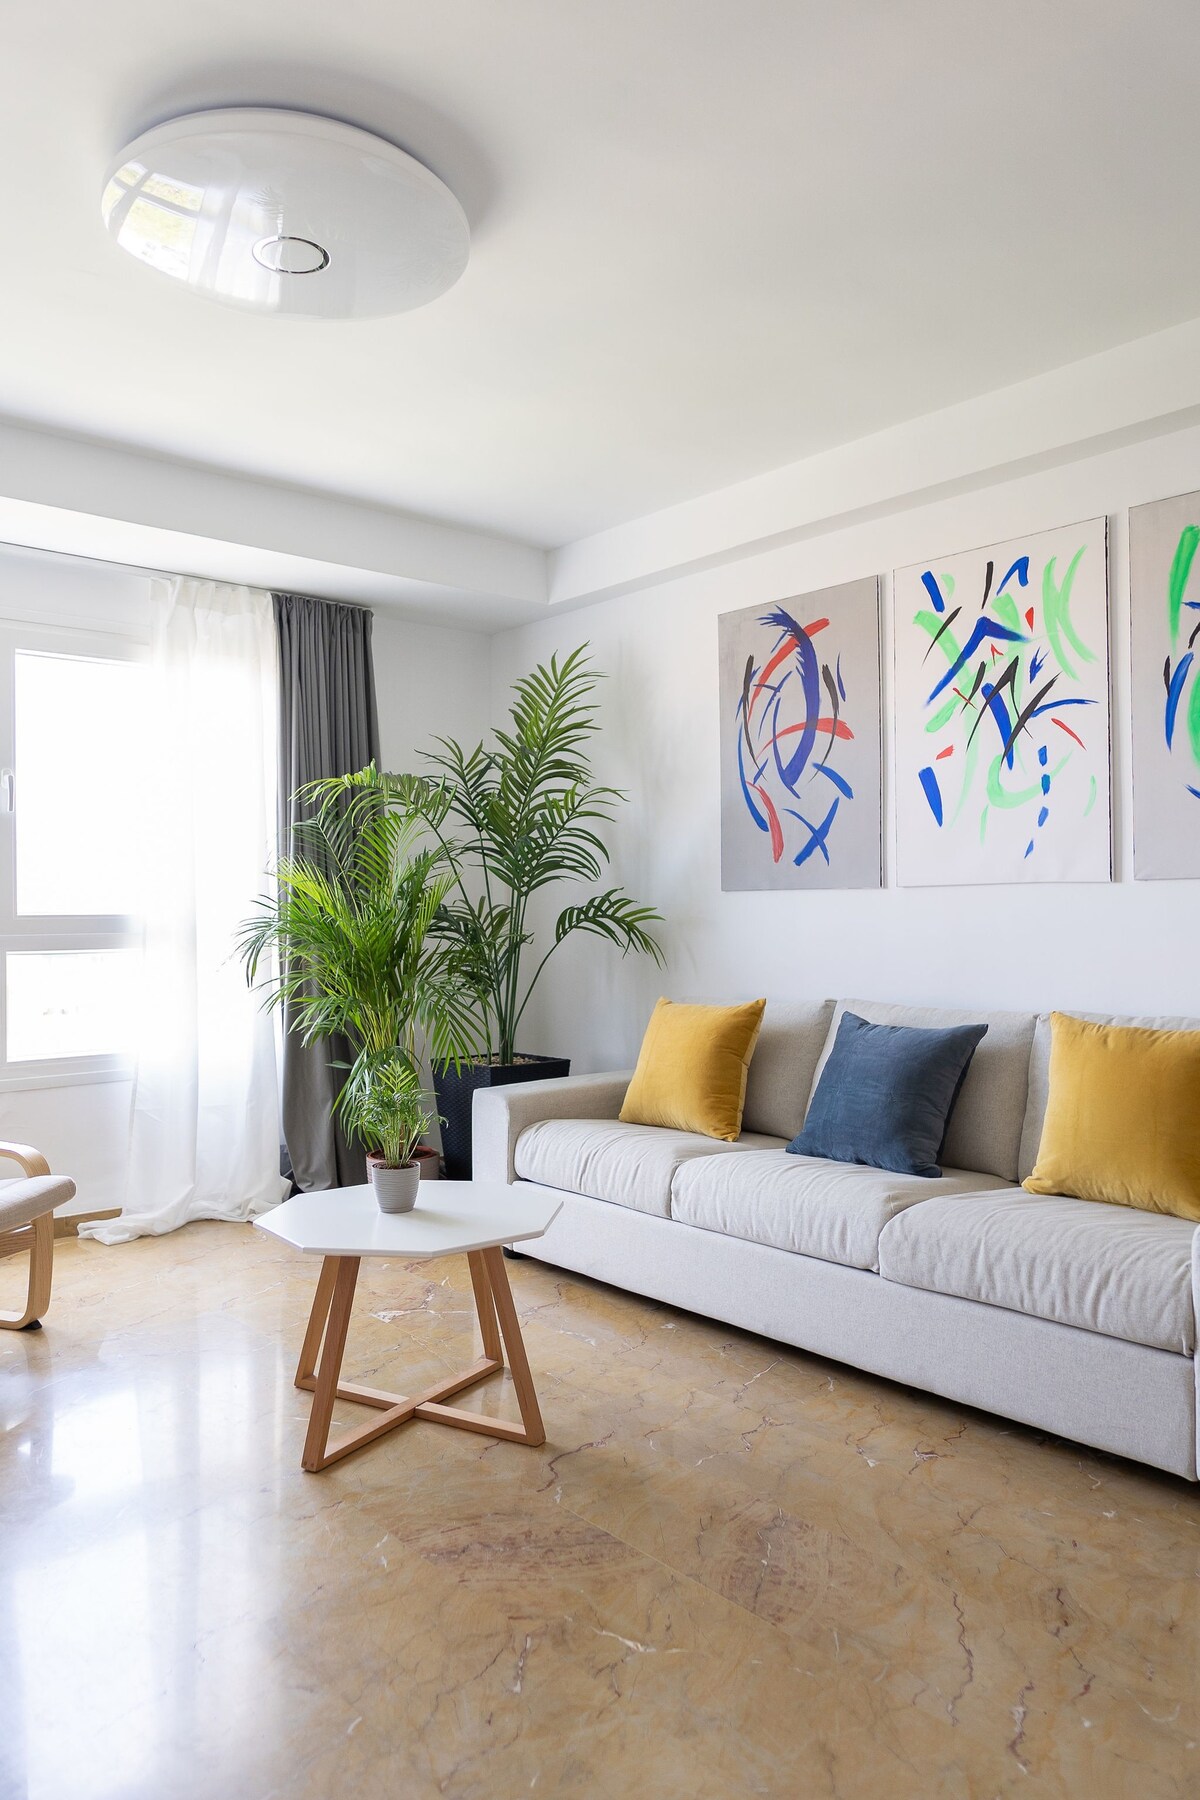 Prime Location: exquisite apartment in Valencia